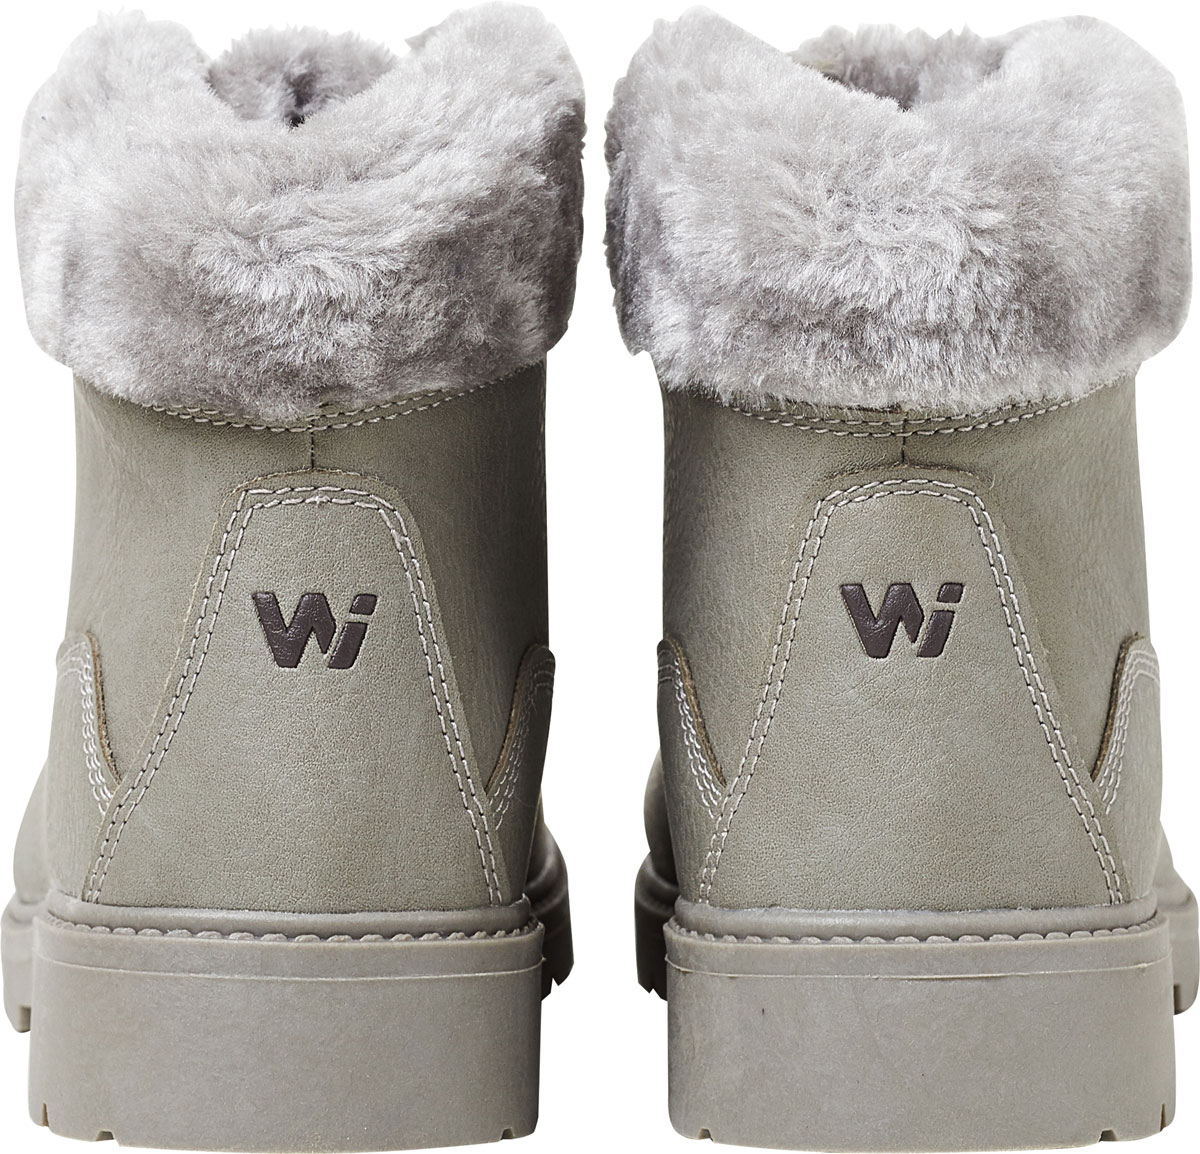 Women's winter footwear